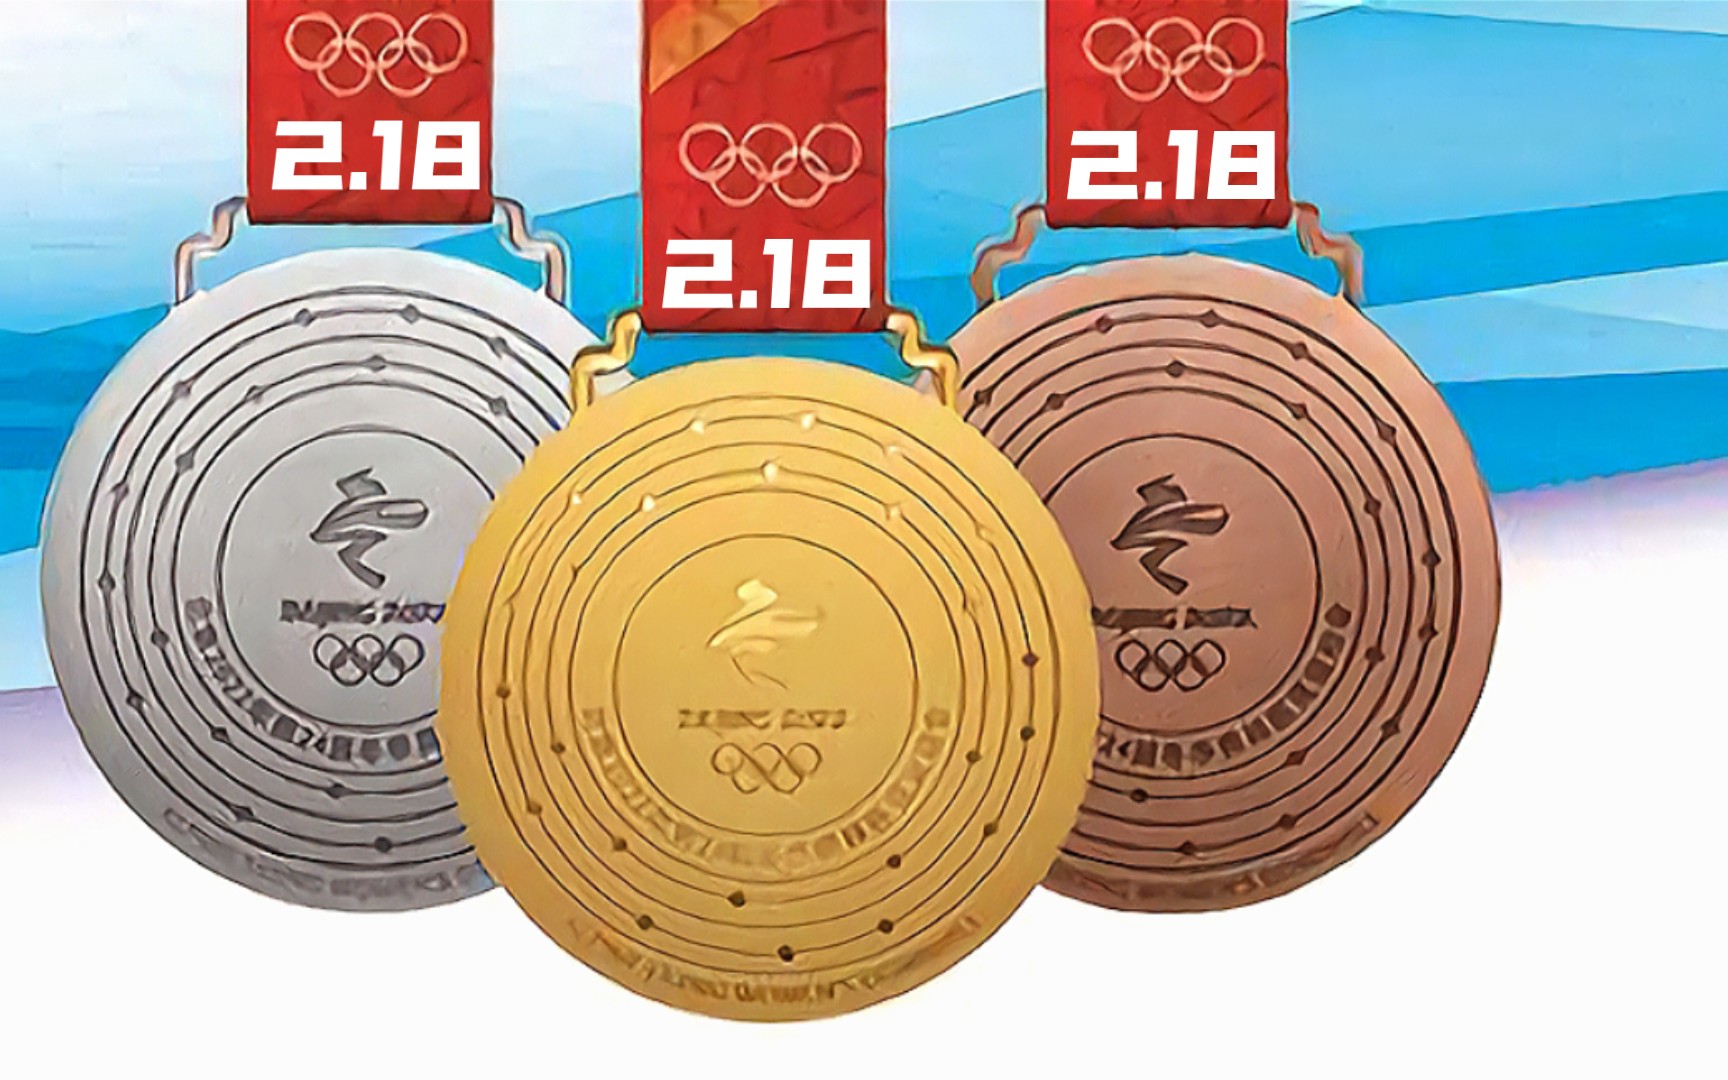 北京冬奥会奖牌统计图片